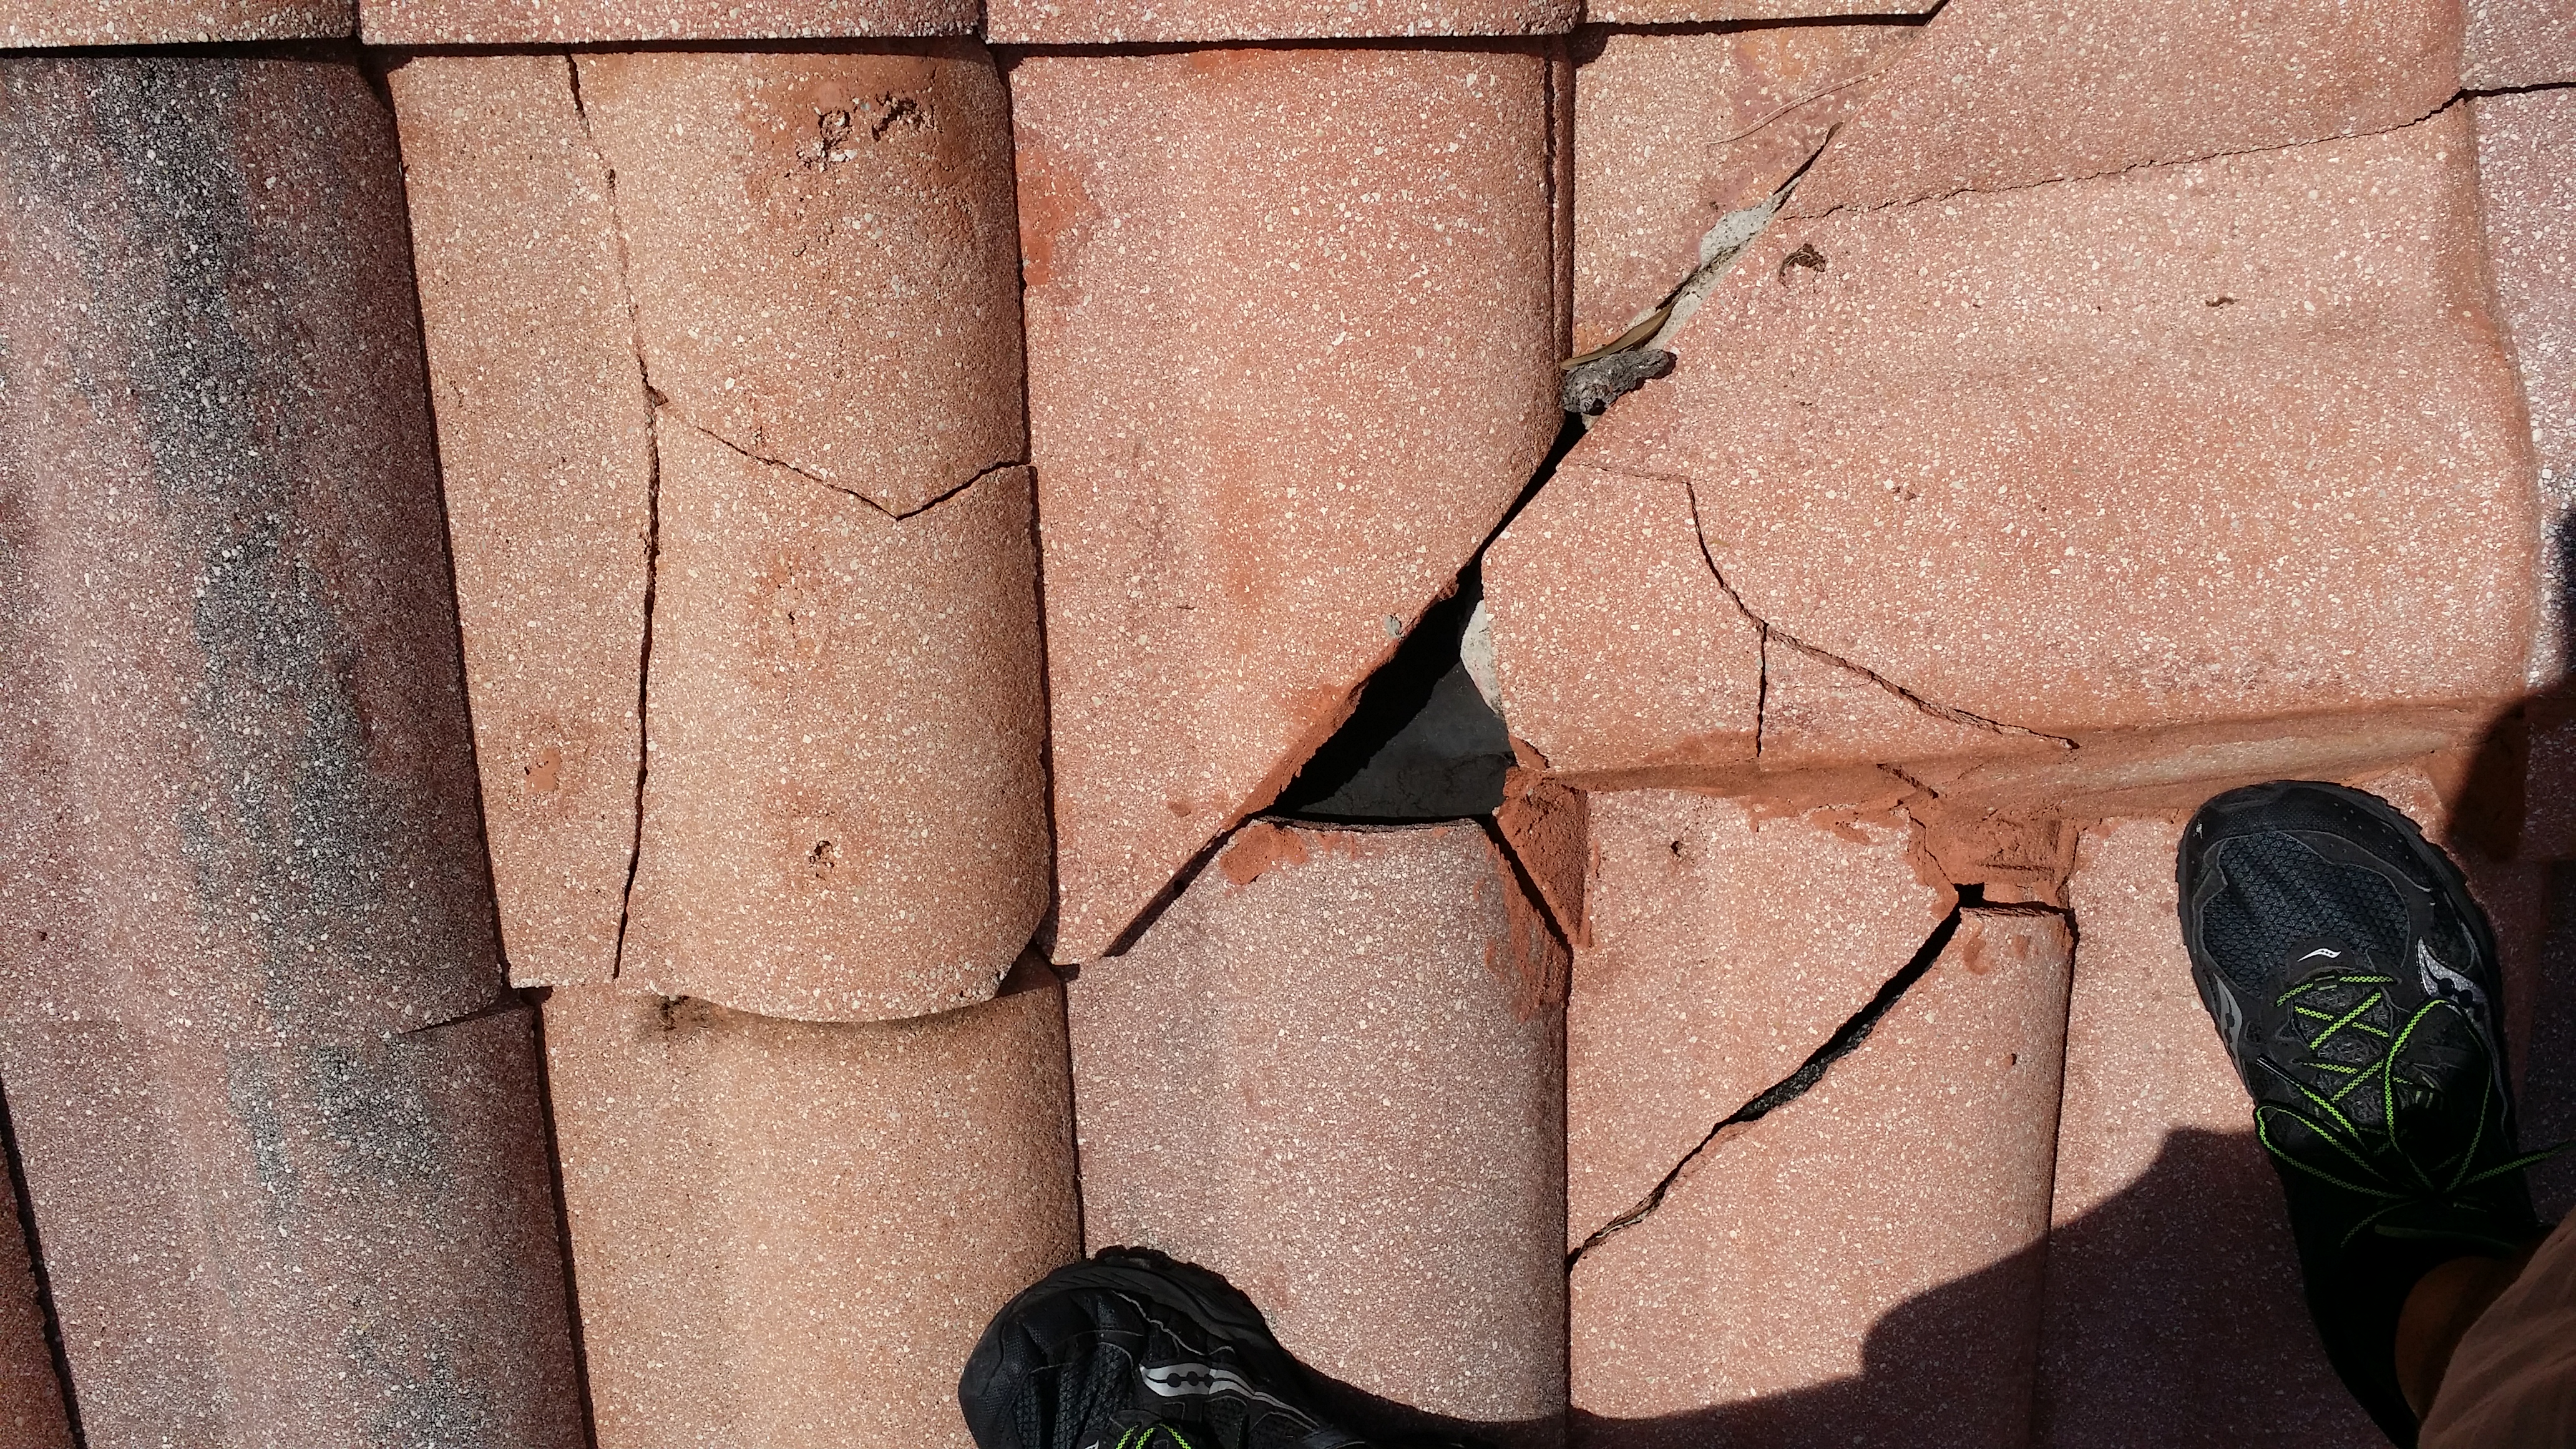 Cracked Tiles From Powerwashing Damage in Florida